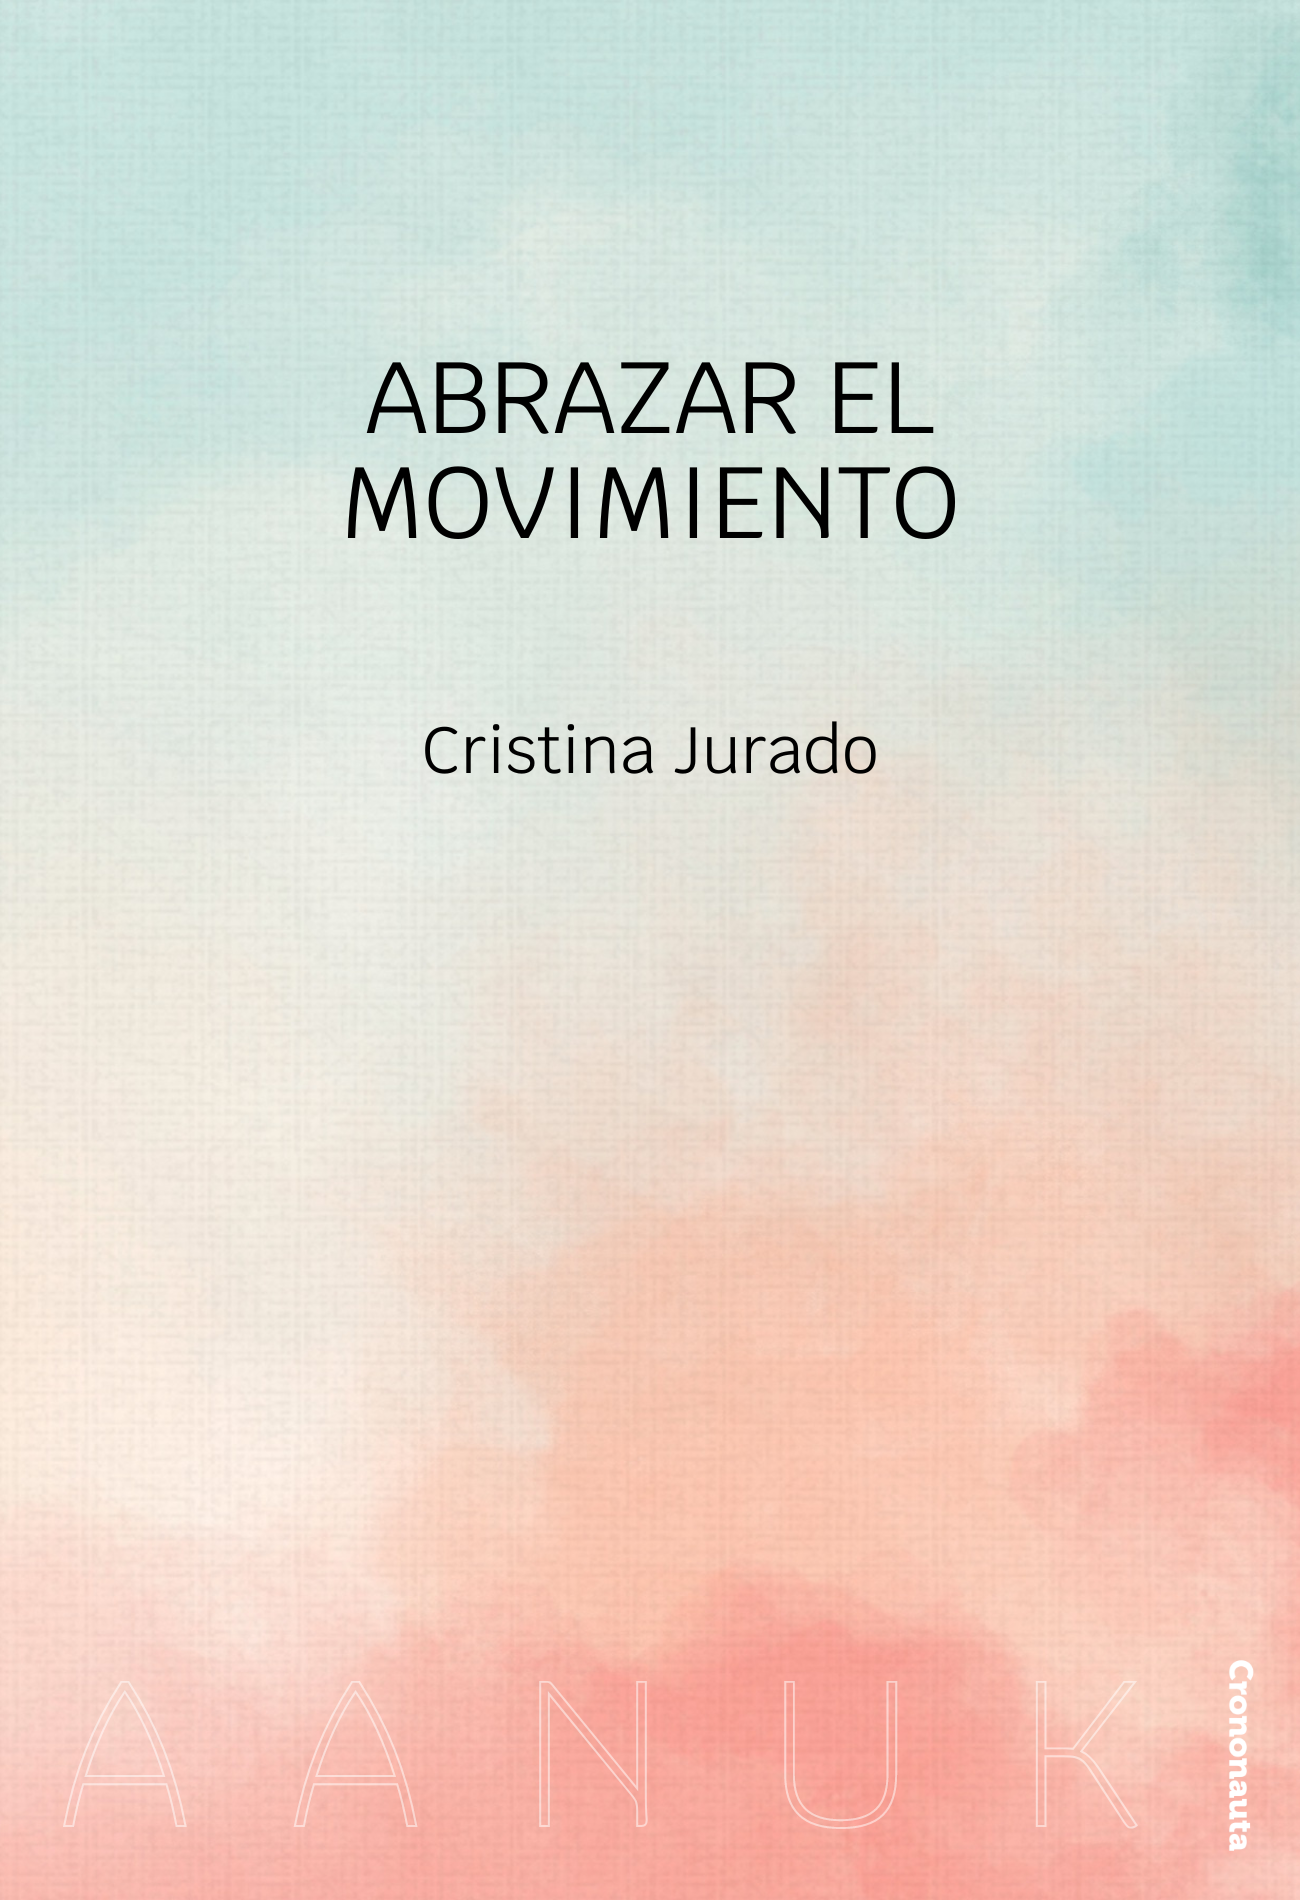 Abrazar el movimiento, de Cristina Jurado. En Aanuk.